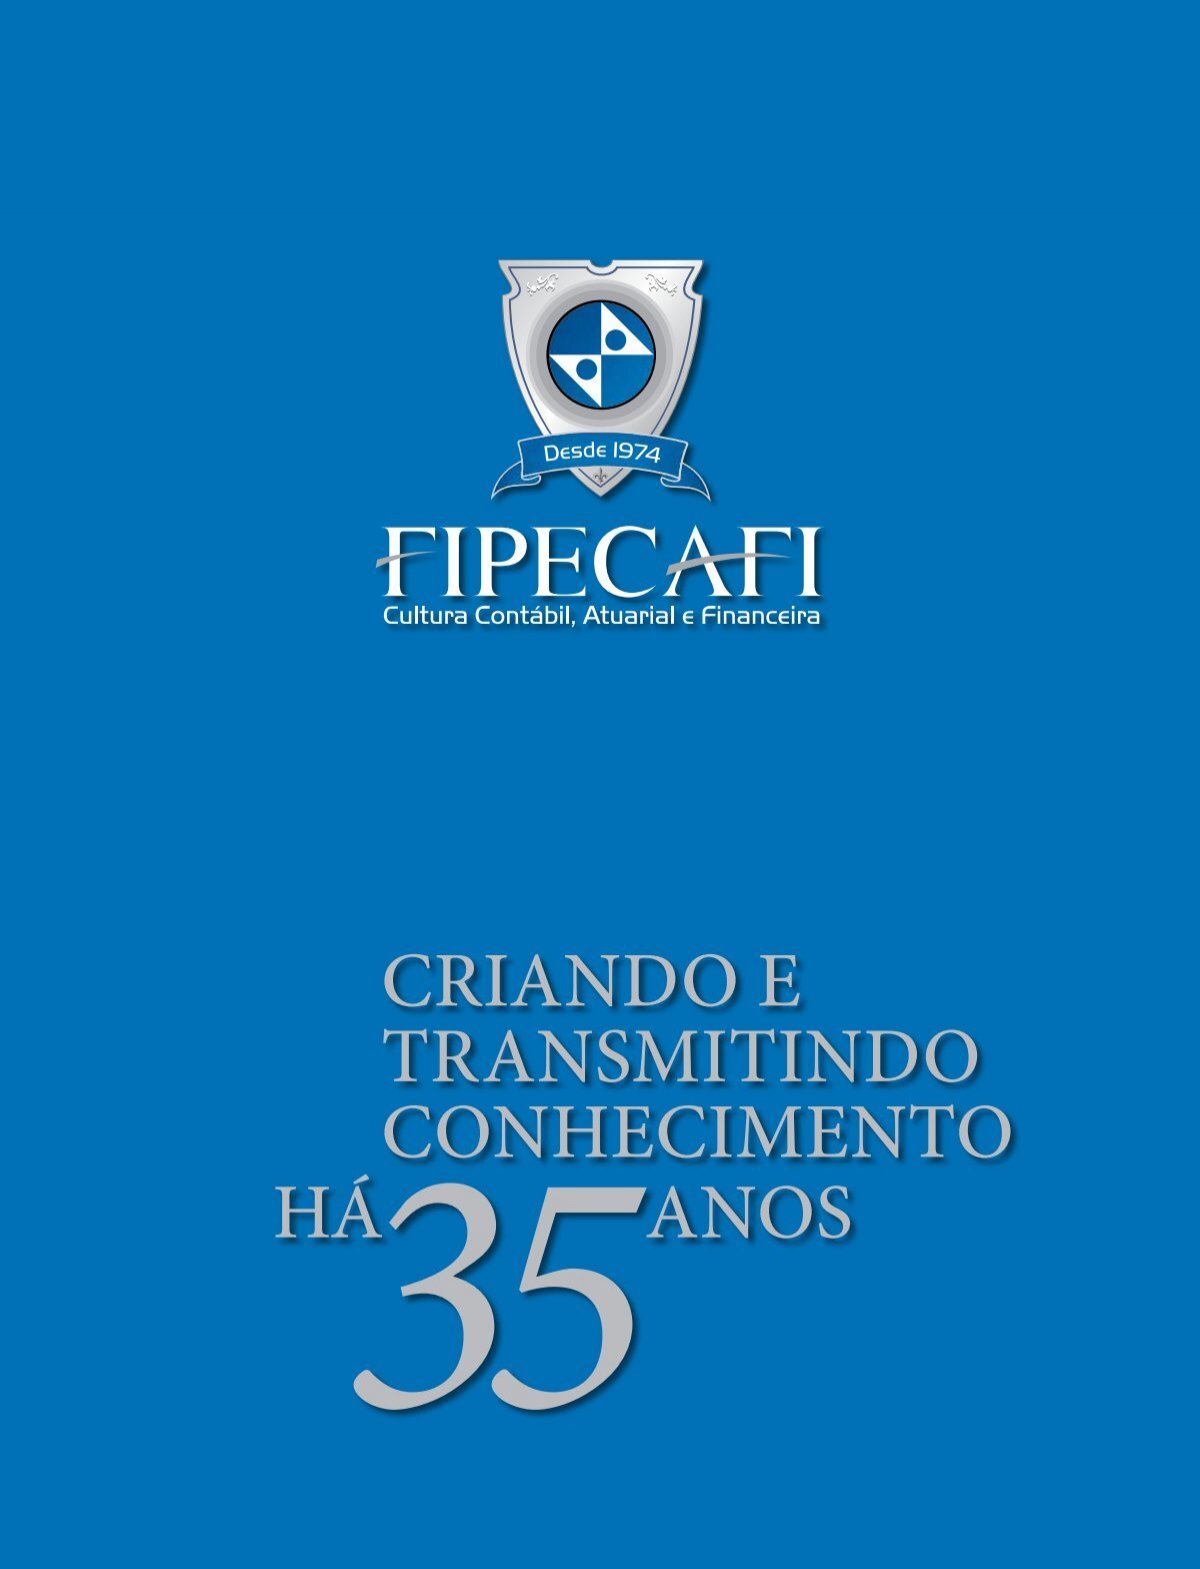 MBA Gestão Tributária - EAD - Com Aulas Ao Vivo FIPECAFI - Cursos de  diversos eixos de conhecimento.